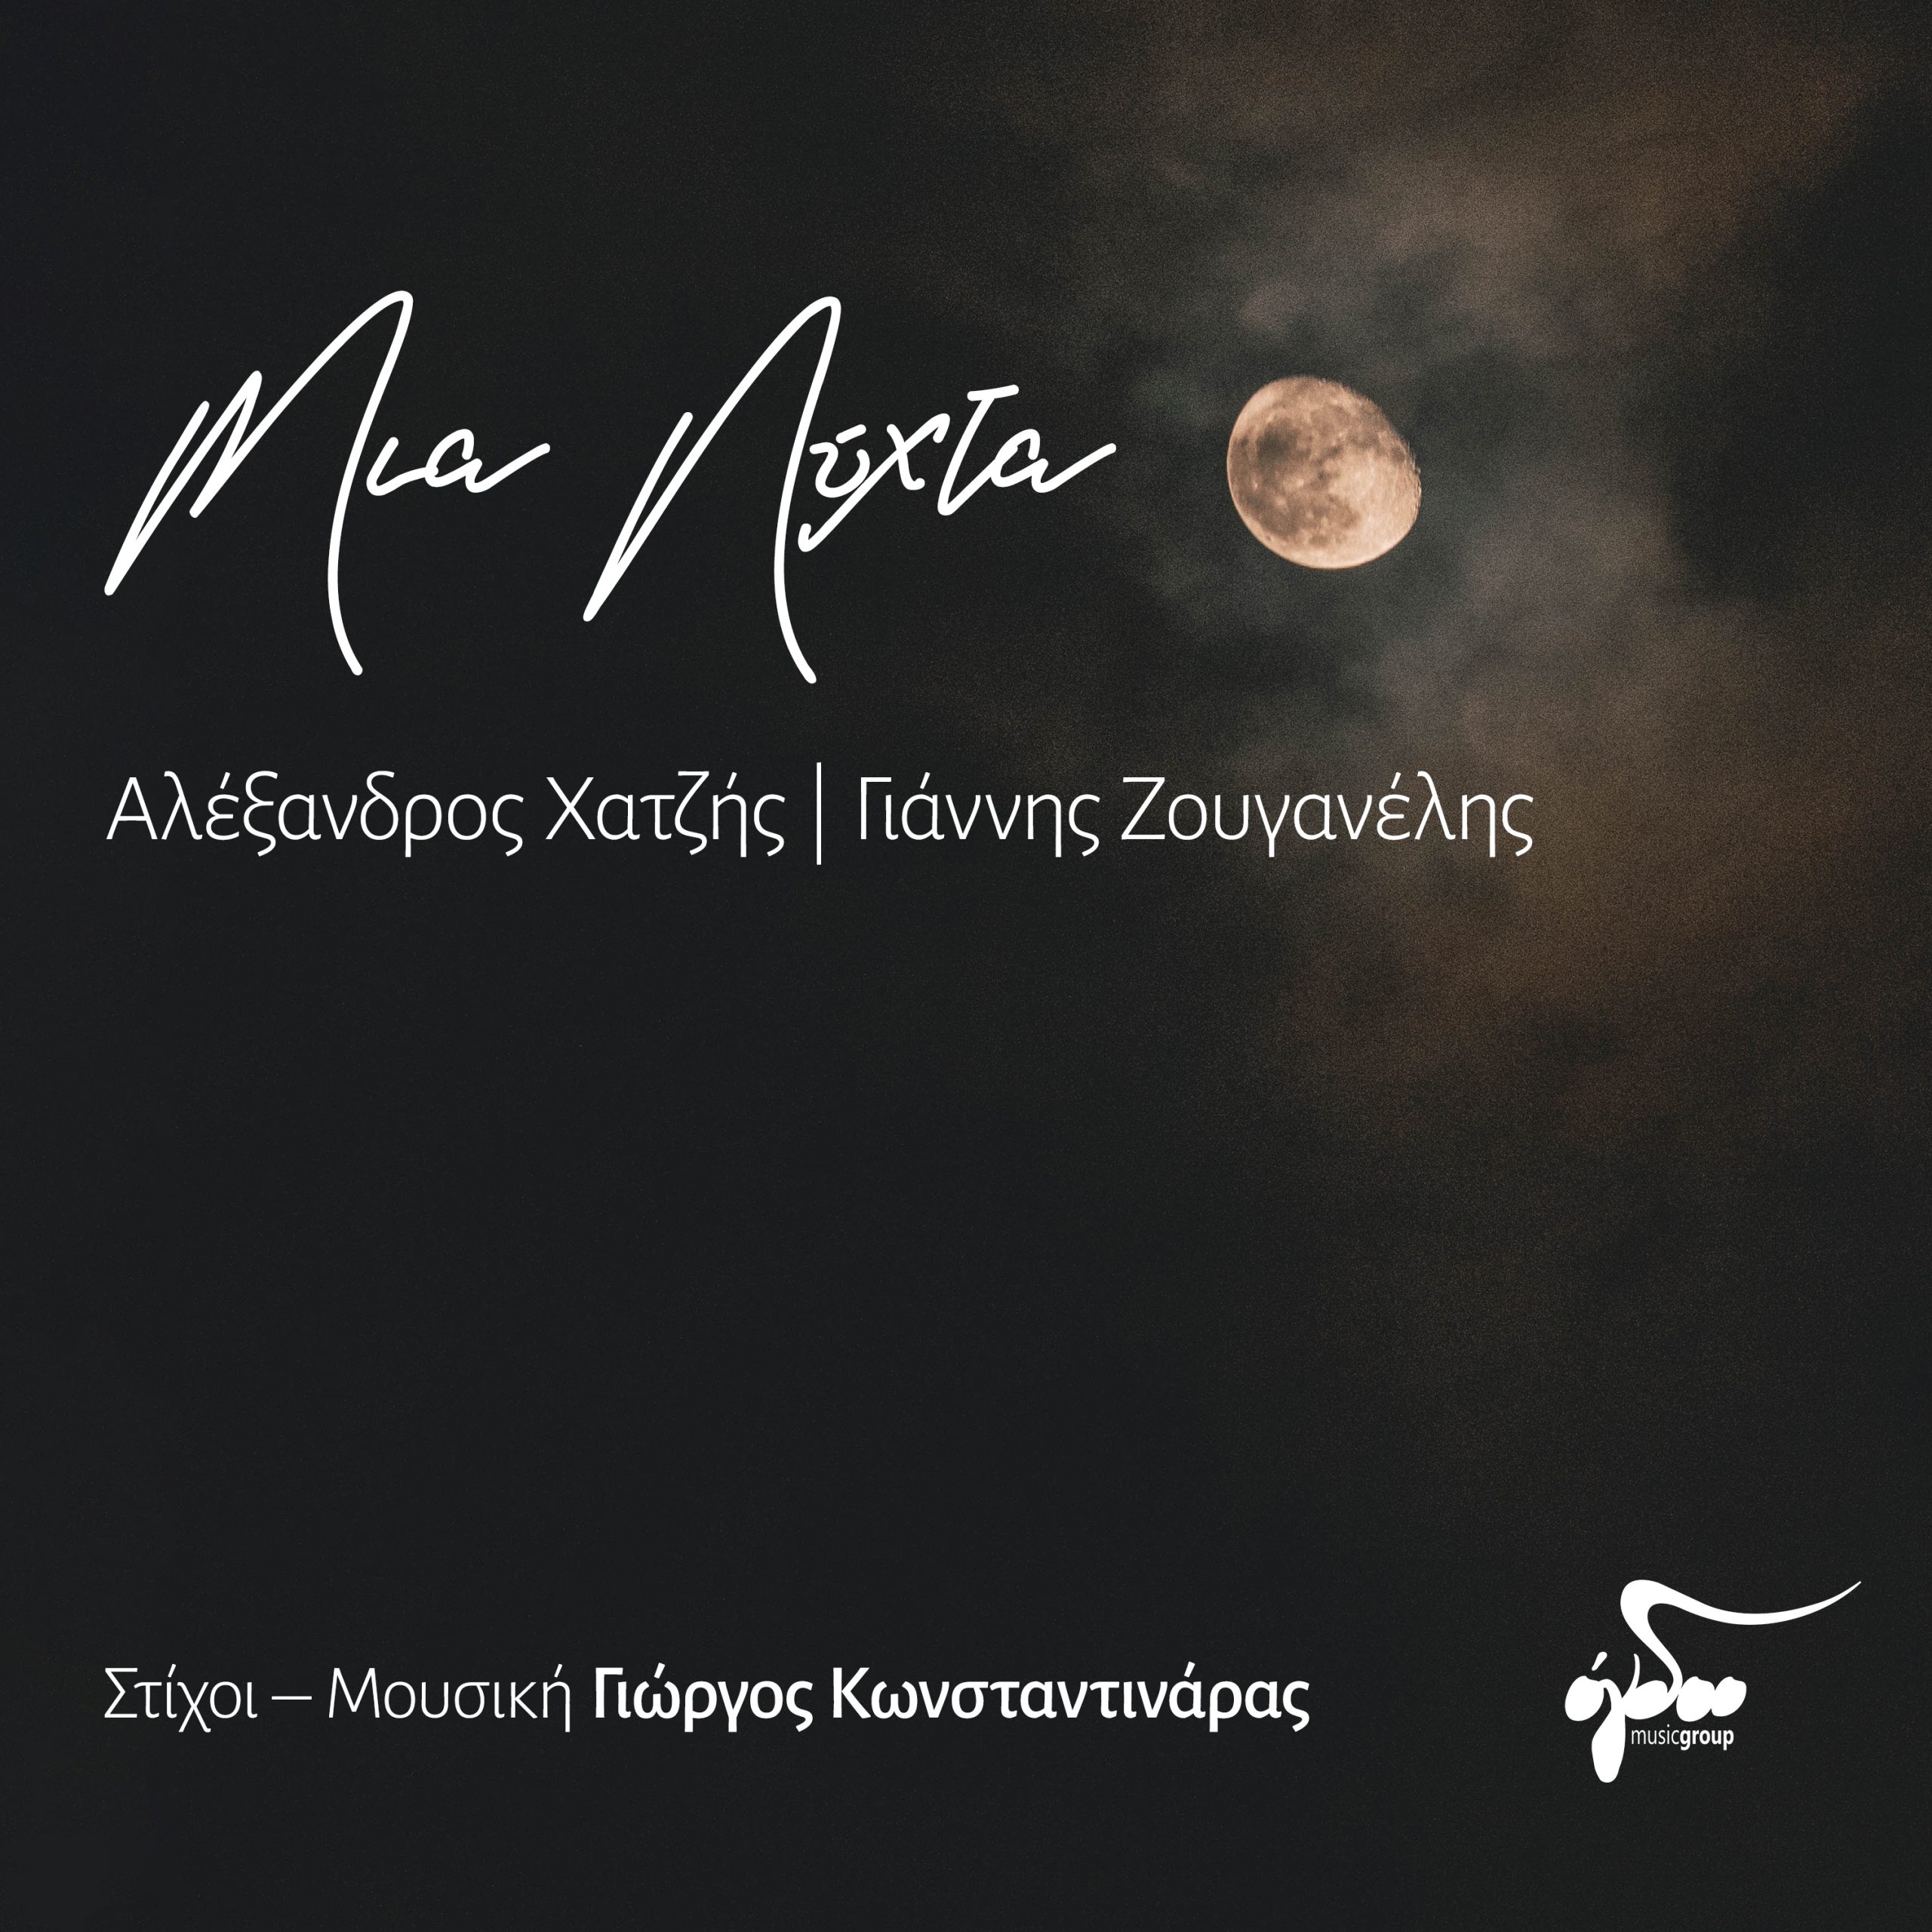 Αλέξανδρος-Χατζής-&-Γιάννης-Ζουγανέλης-«Μια-νύχτα»-(digital-single)